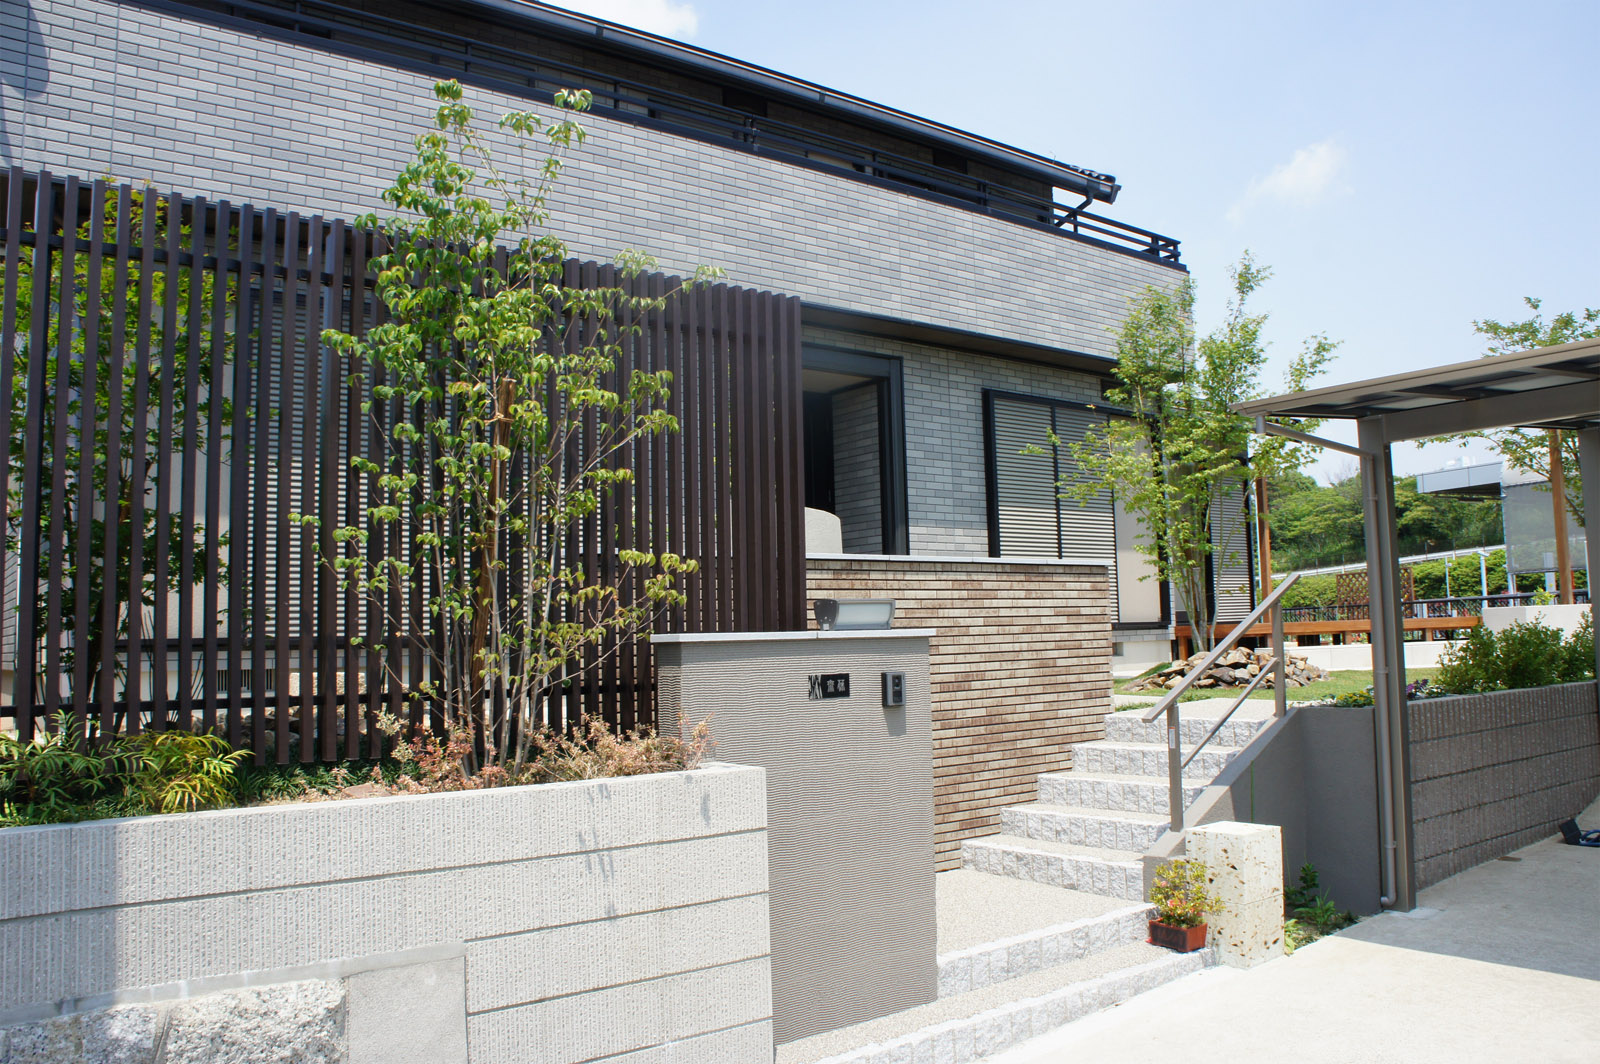 セキスイハイムでのお庭 エクステリア施工実績 サービス 名古屋 エクステリア 外構 お庭の設計は庭芯設計事務所